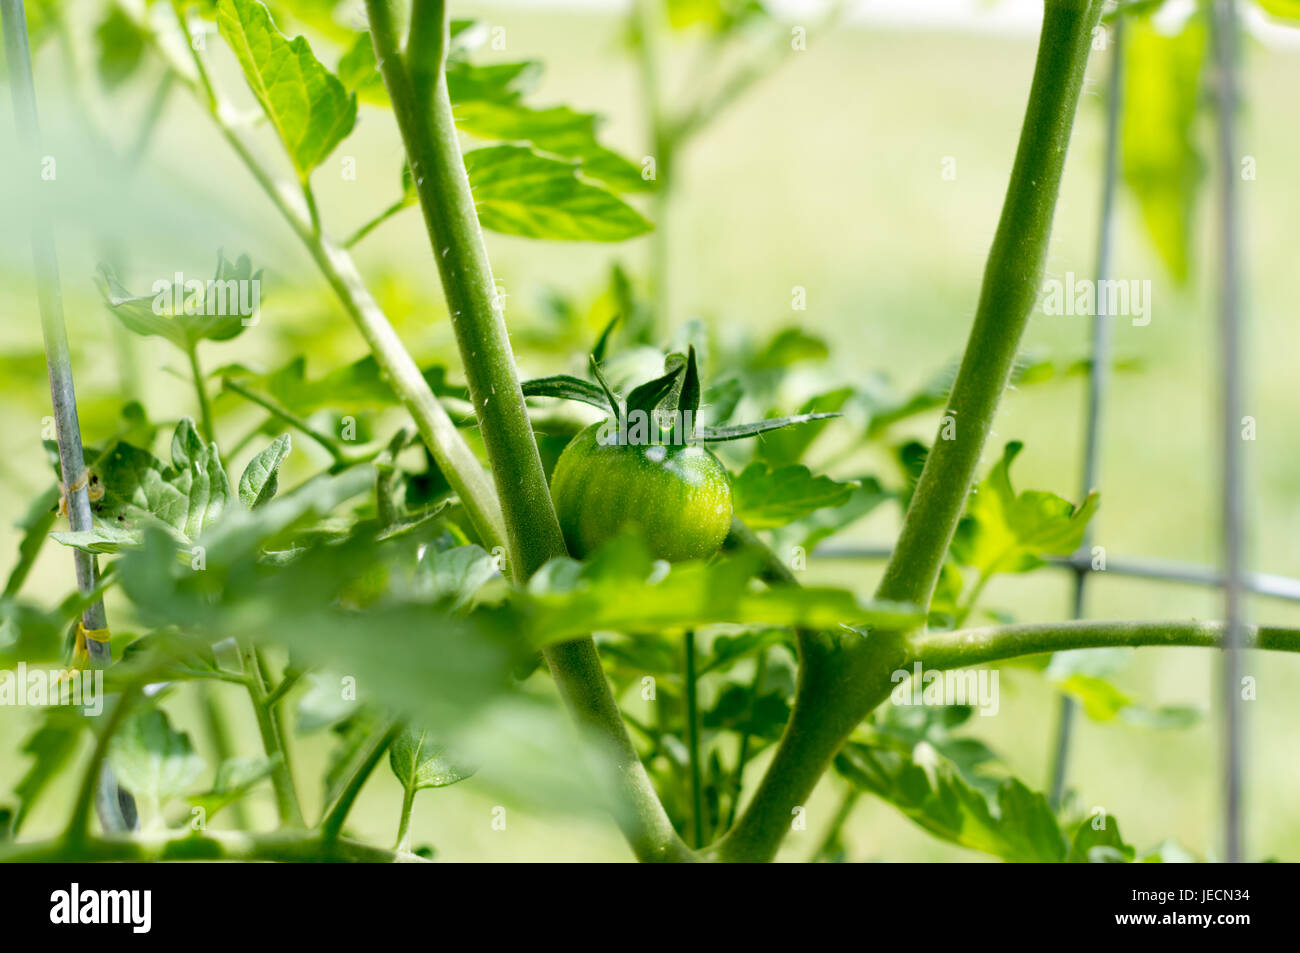 Inquadratura ravvicinata di un pomodoro acerbo che cresce in un cortile giardino vegetale. Foto Stock